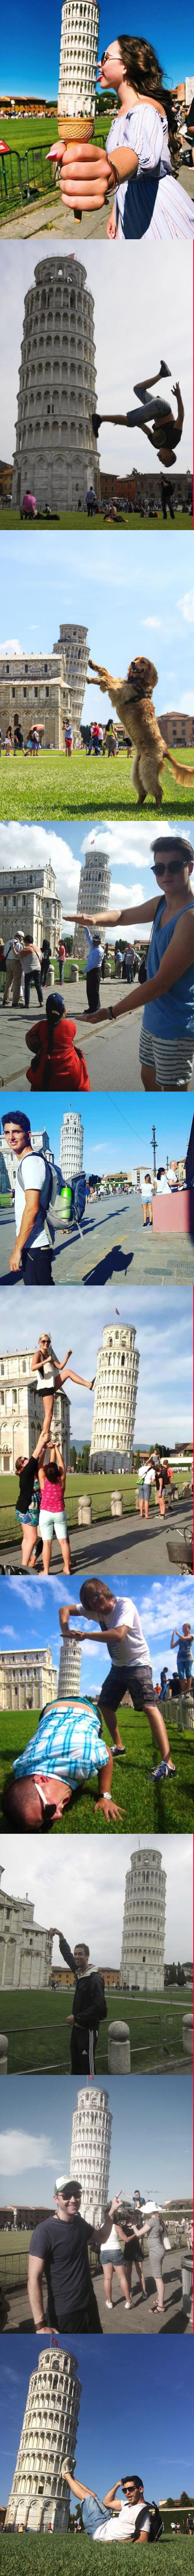 Otros - Posando de forma original con la Torre de Pisa